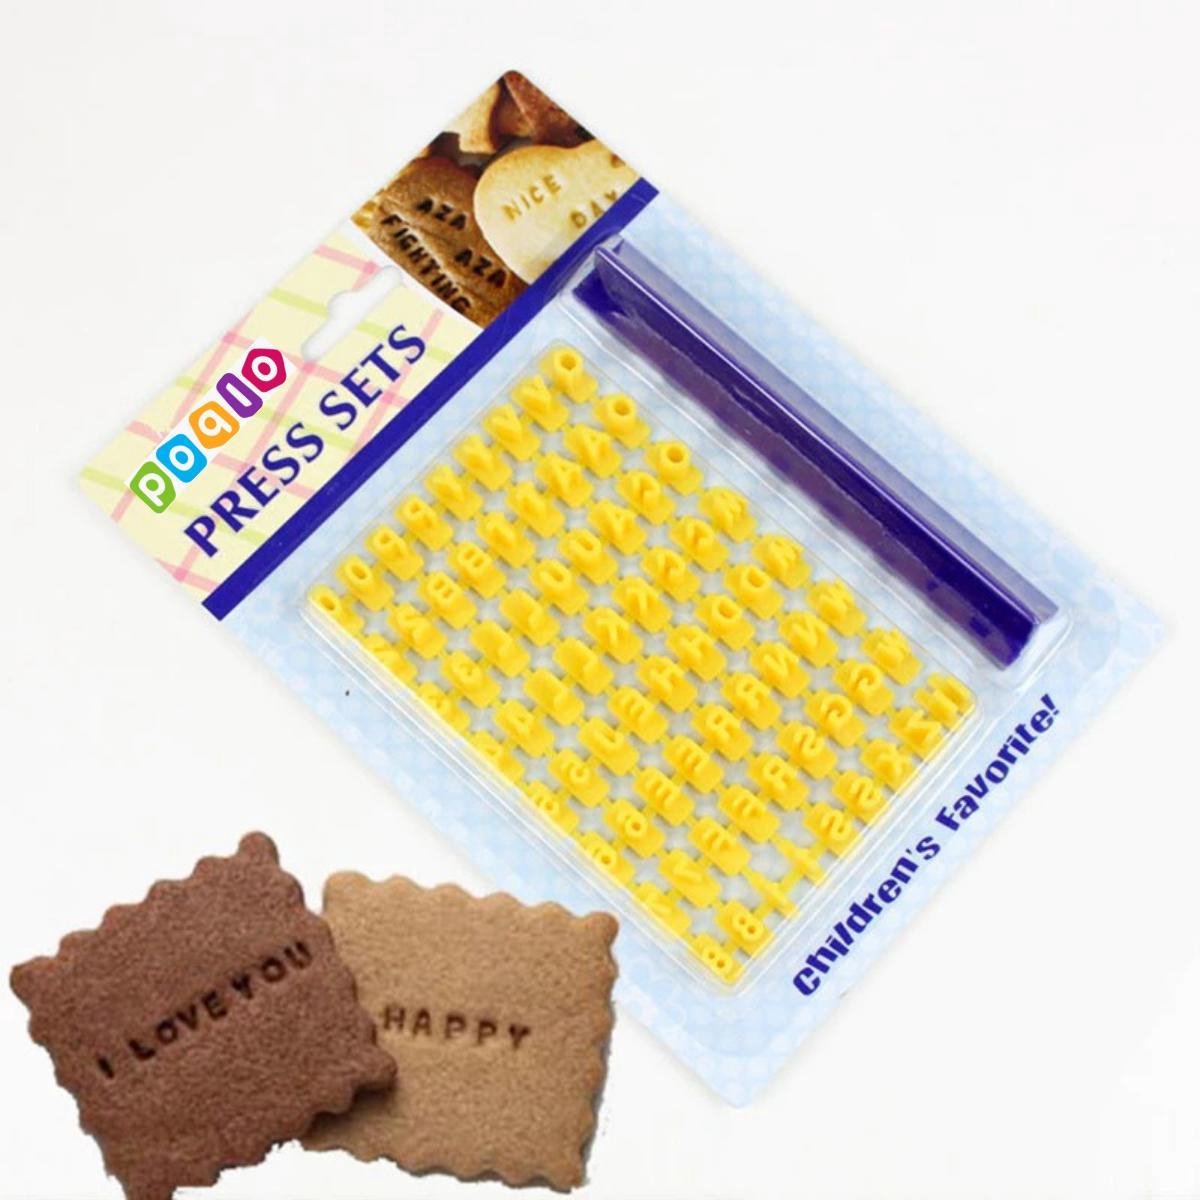 Koekje Alfabet en Nummer Stempel Set - Cookie pers - Biscuit Mold - Decorating Druk Set - Embosser Cutter - Druk Stempel - Schimmel